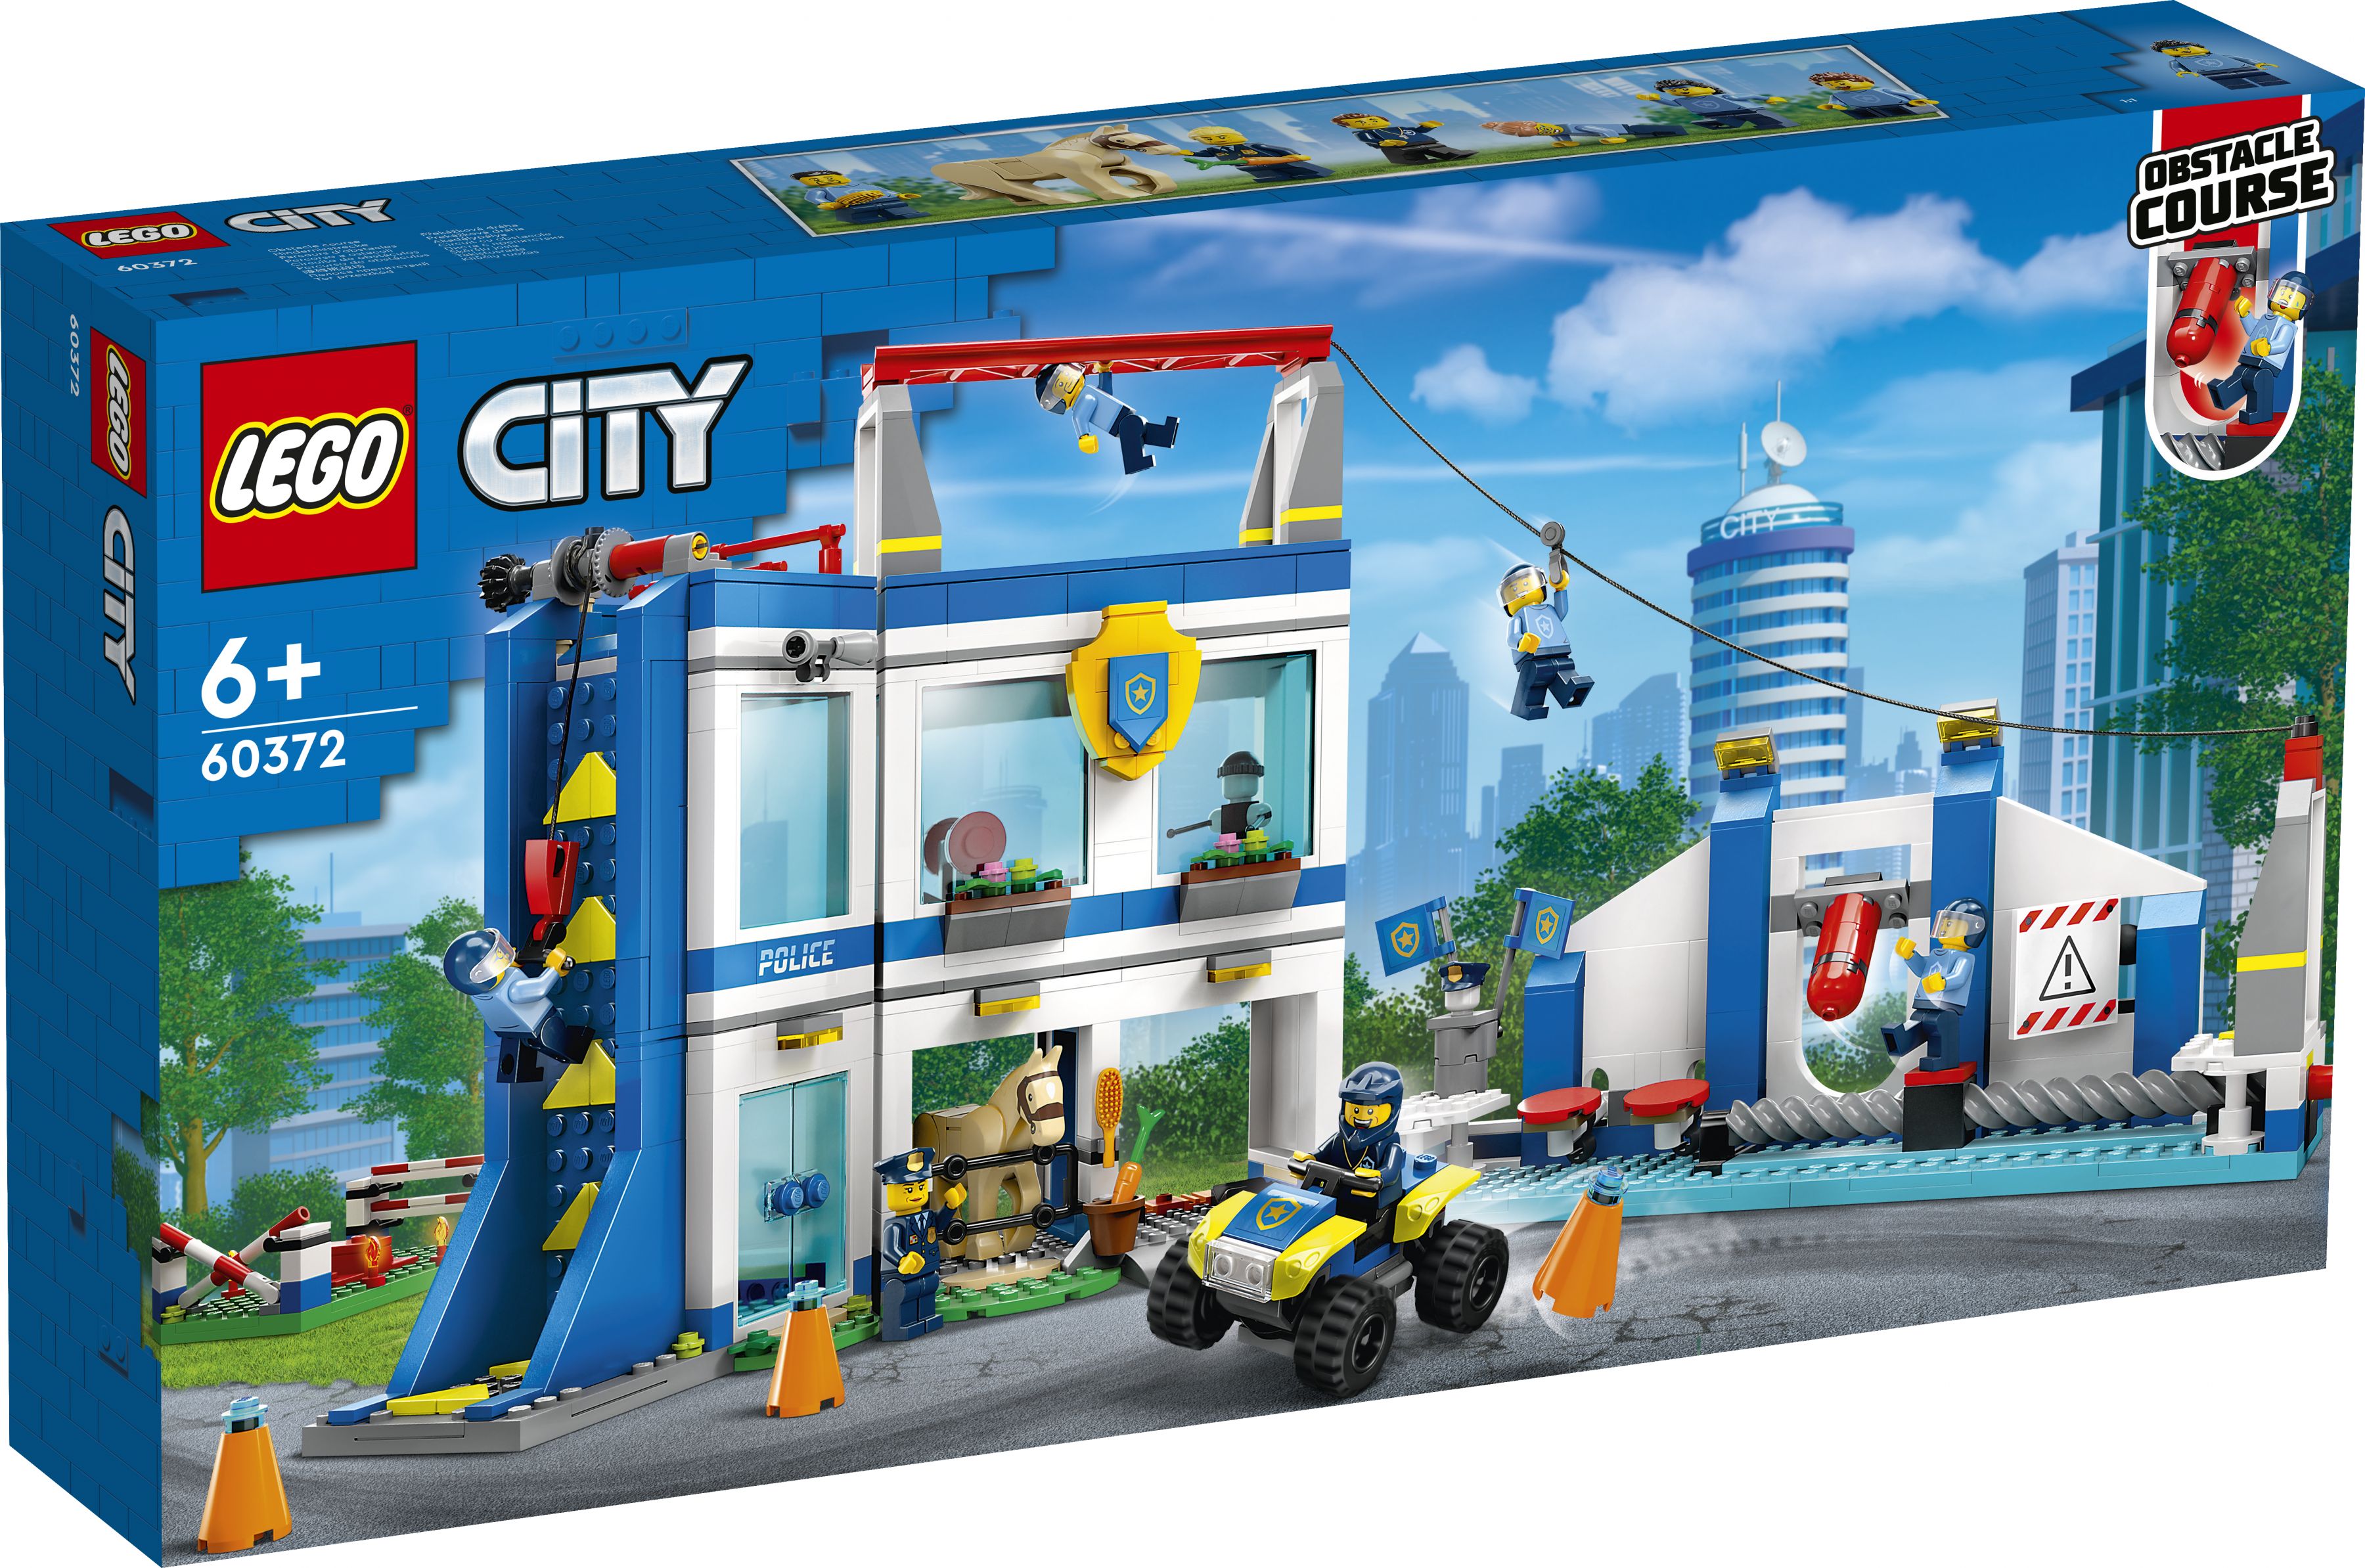 LEGO City 60372 Polizeischule LEGO_60372_Box1_v29.jpg